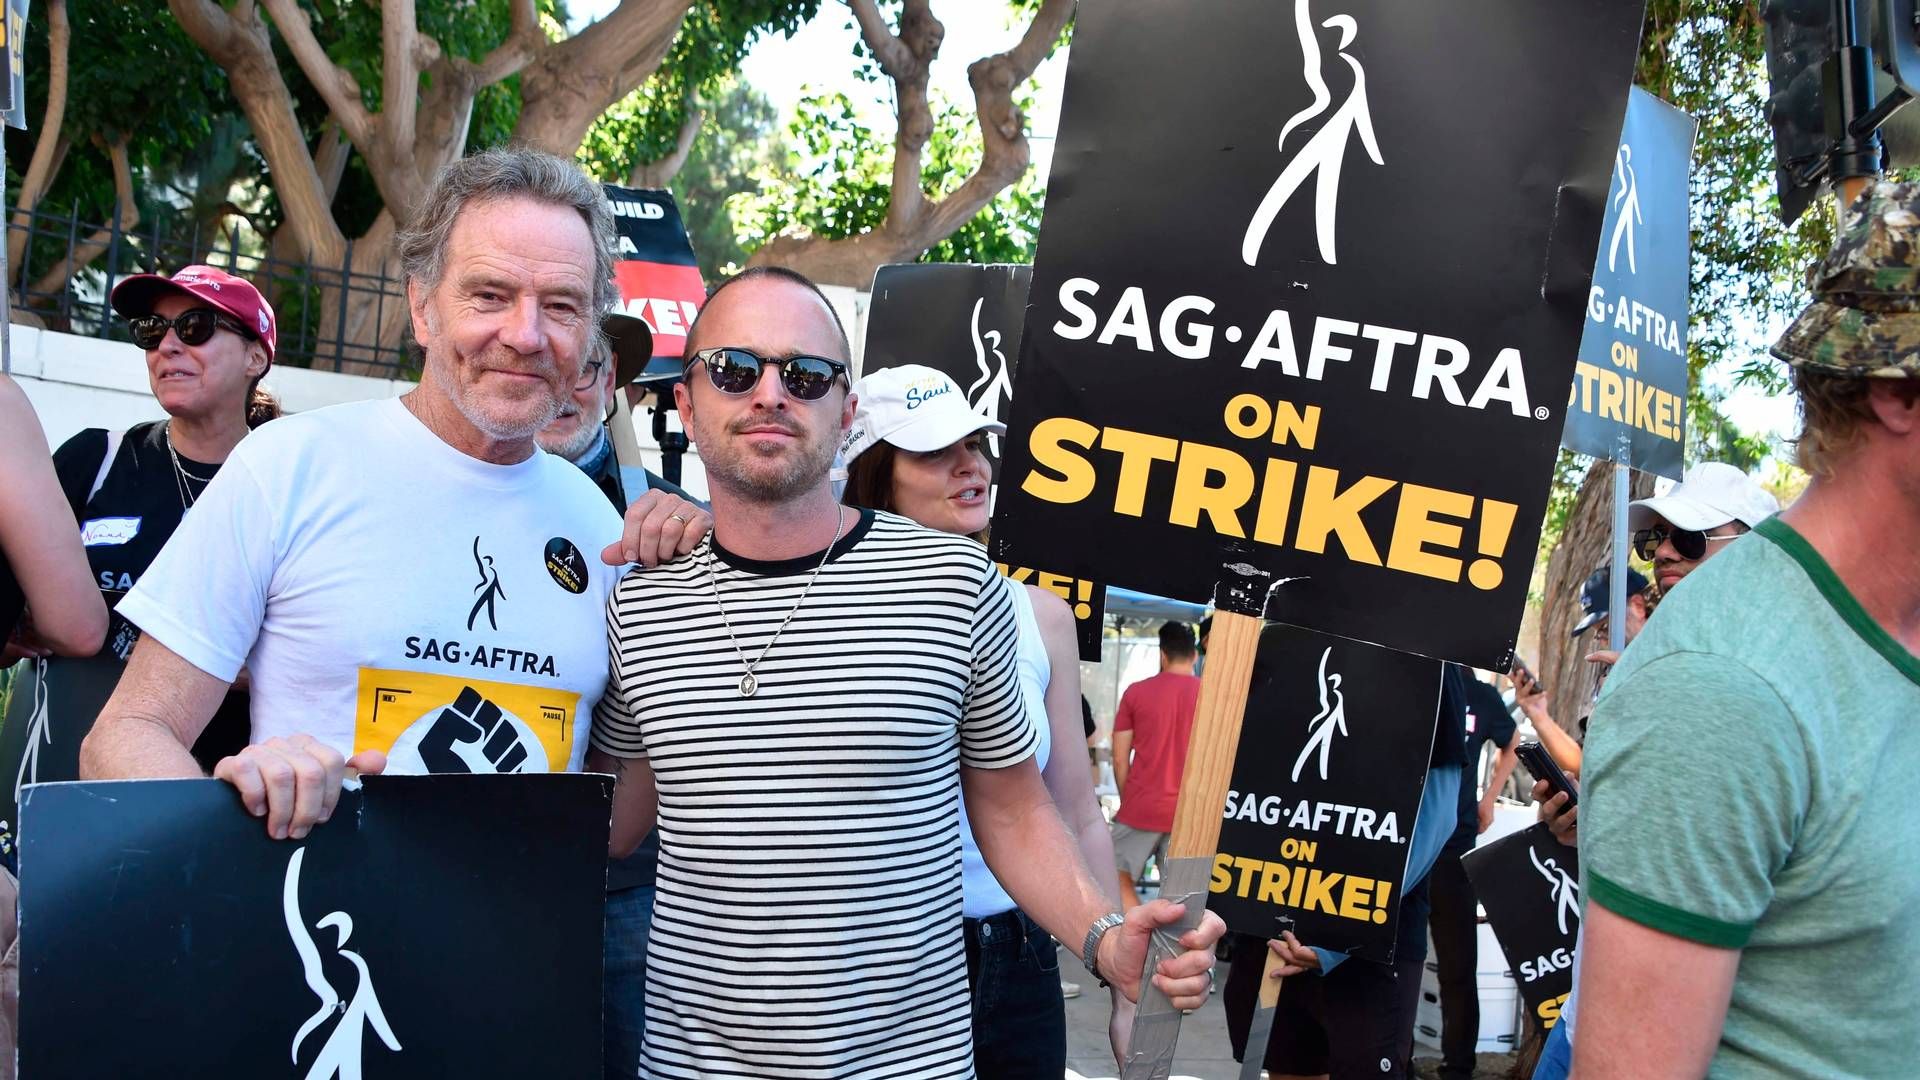 Siden juli har de amerikanske skuespillere strejket over dårlige løn- og arbejdsvilkår i Hollywood. | Foto: Chris Delmas/Ritzau Scanpix